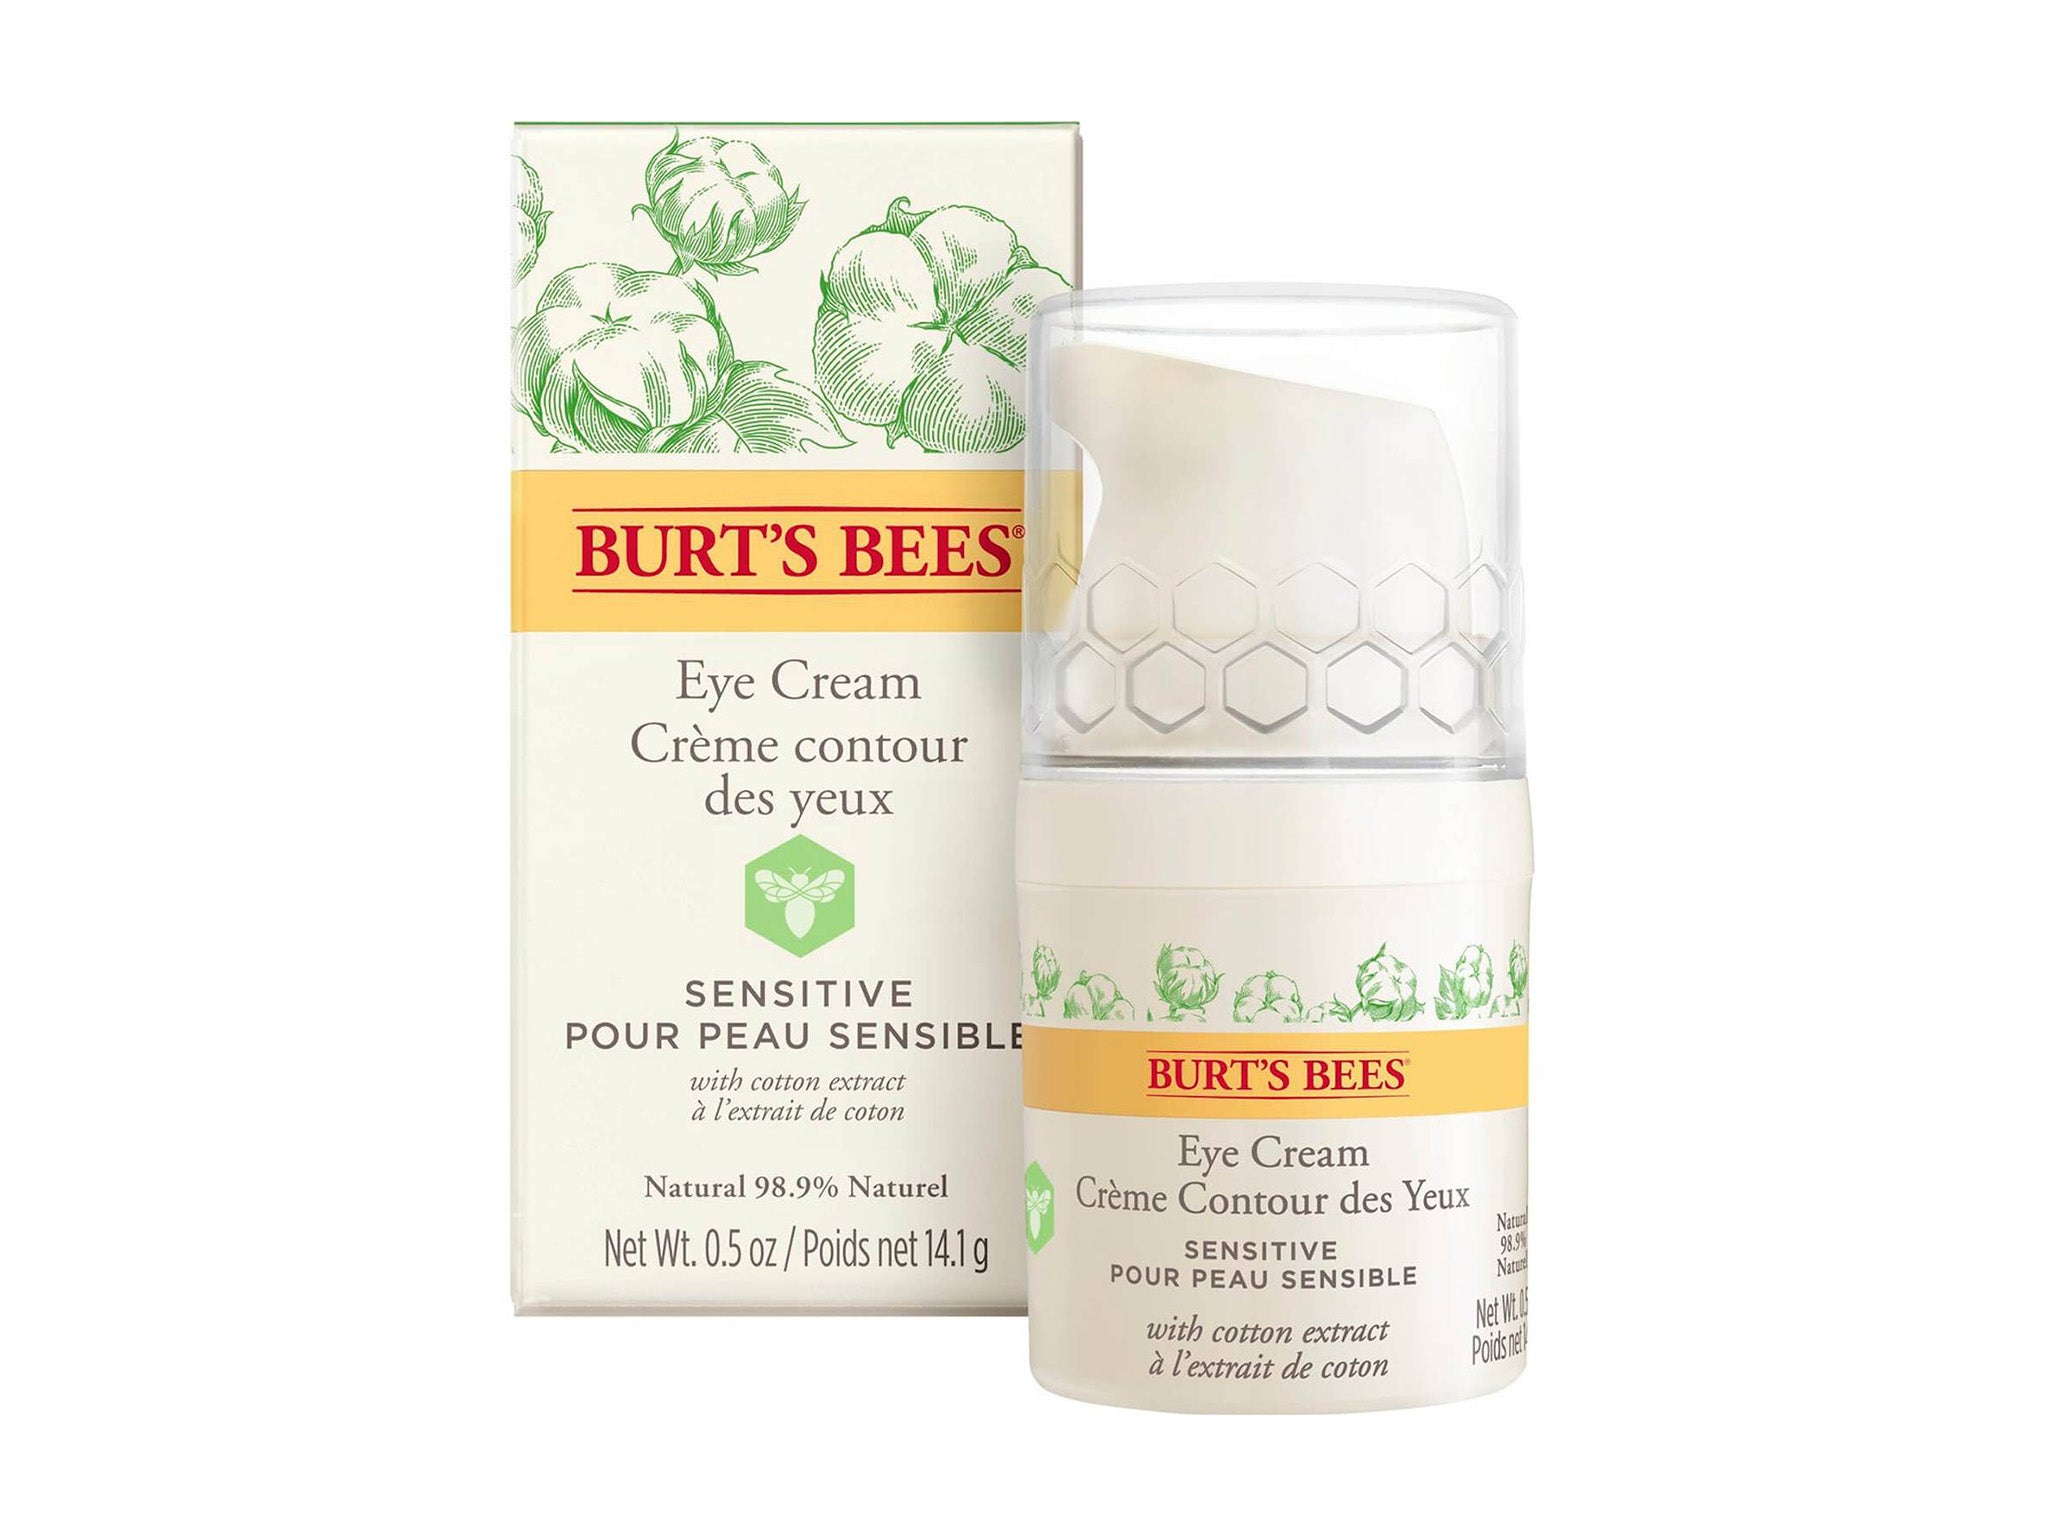 Burt’s Bees eye cream